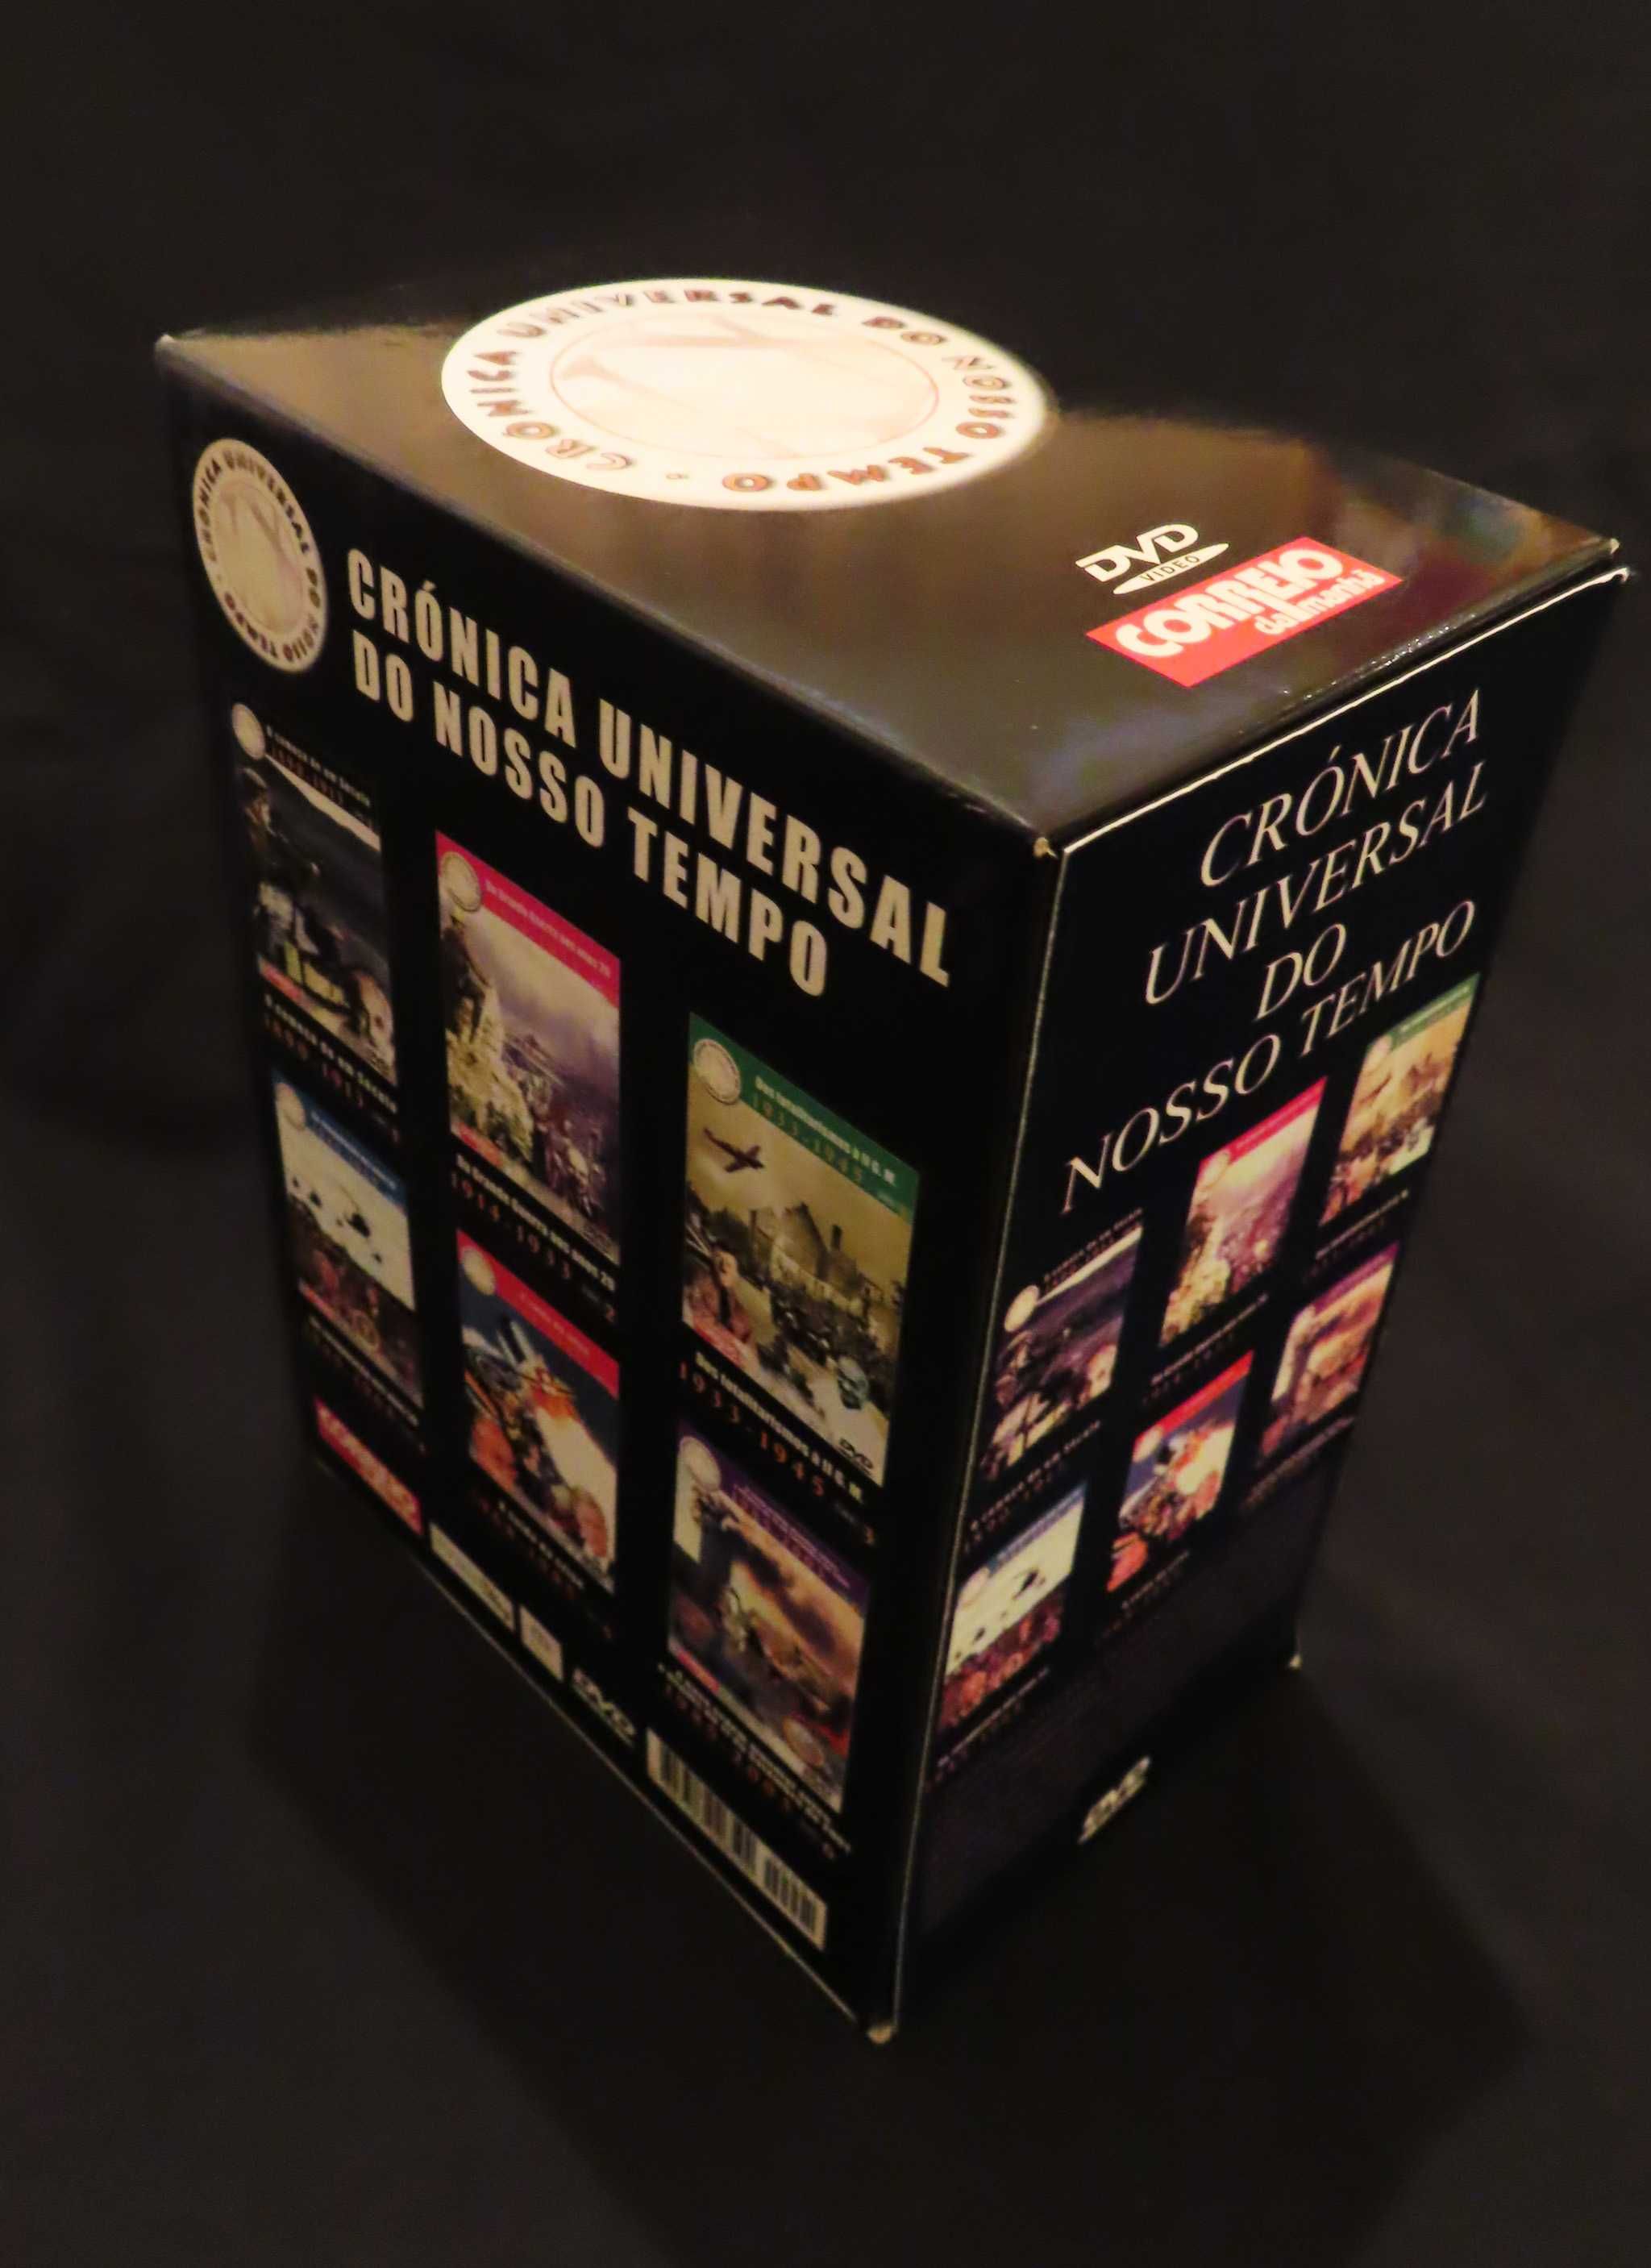 Coleção 6 DVD's - Crónica Universal do Nosso Tempo